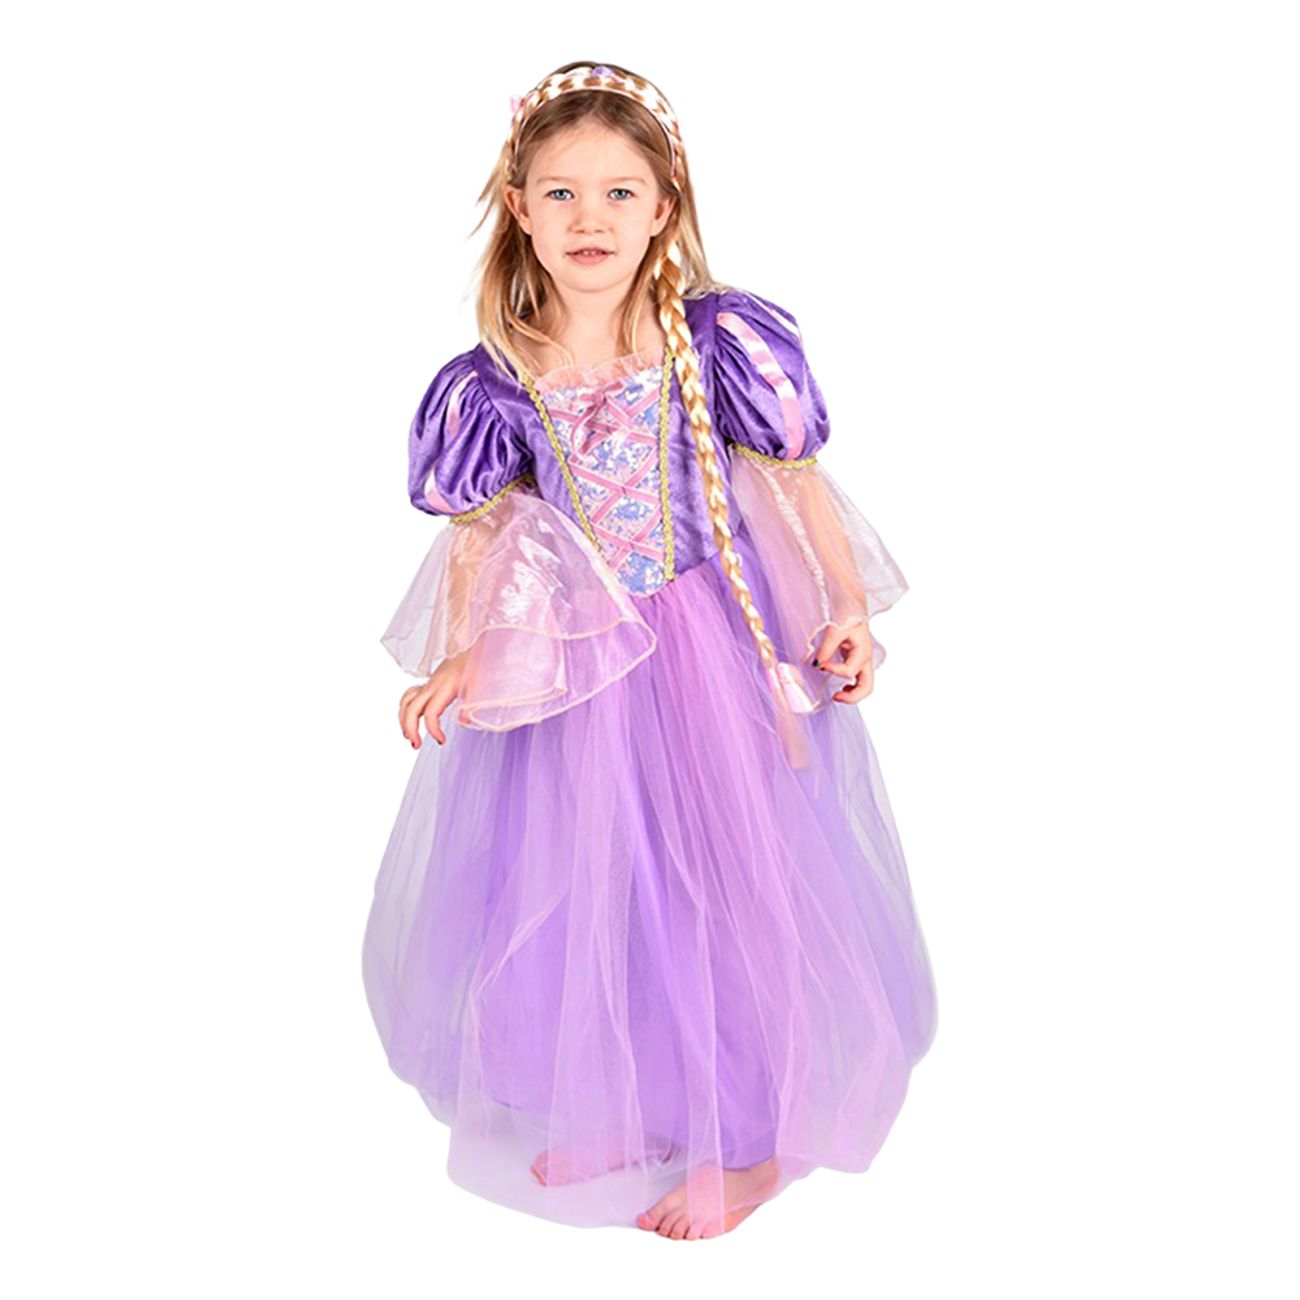 Rapunzel kostume til børn - Rapunzel kostume til børn